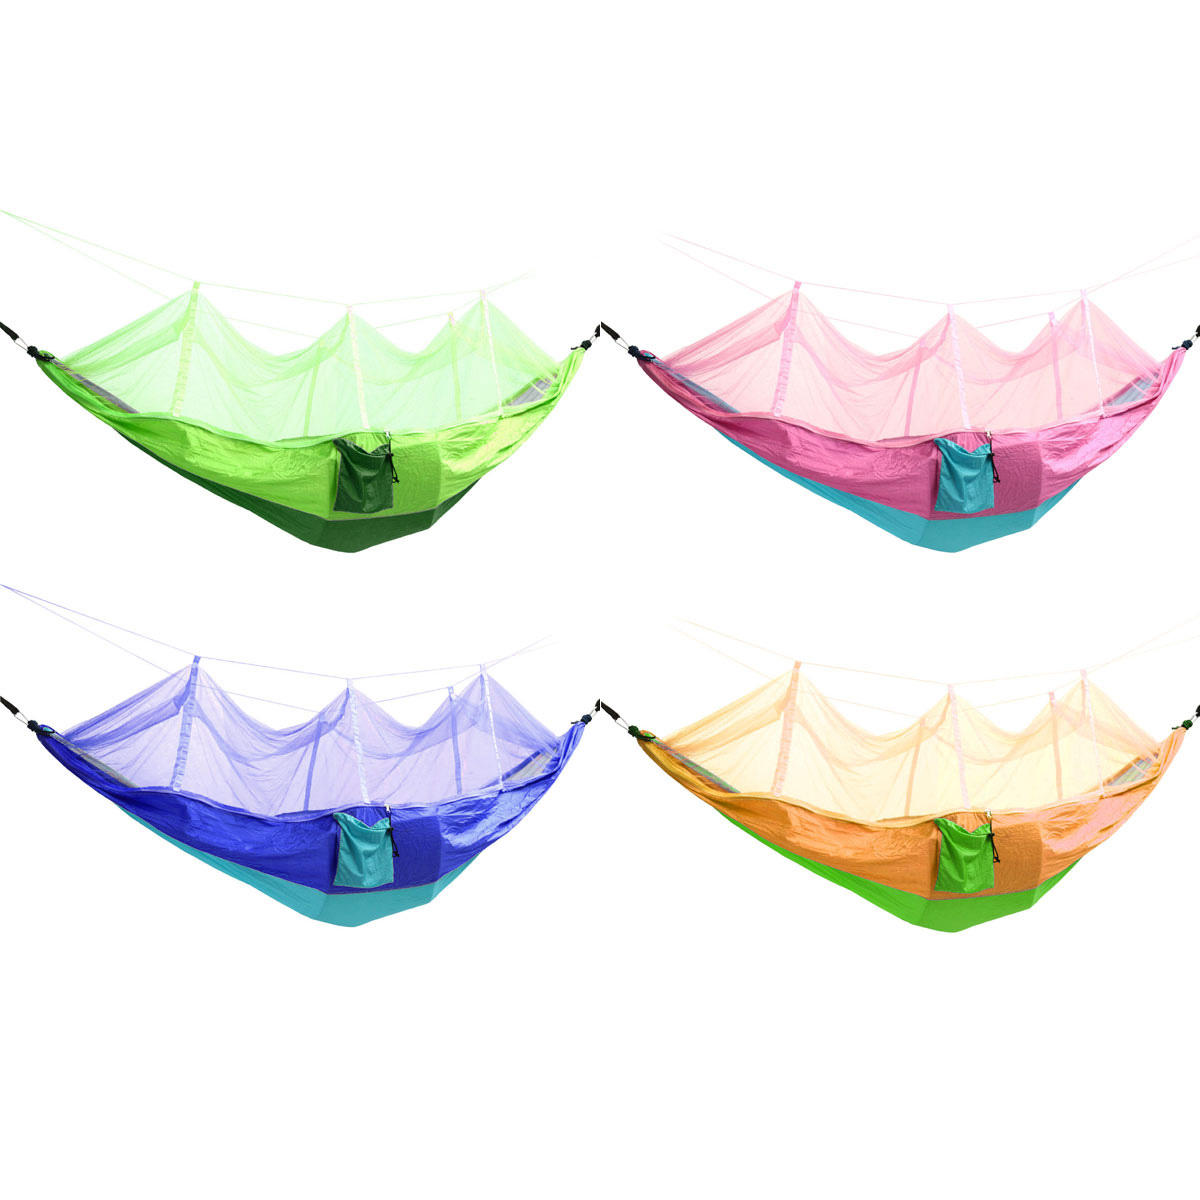 Al aire libre de la red de mosquito hamaca doble colgante cama abatible de nylon de paracaídas para acampar del recorrido